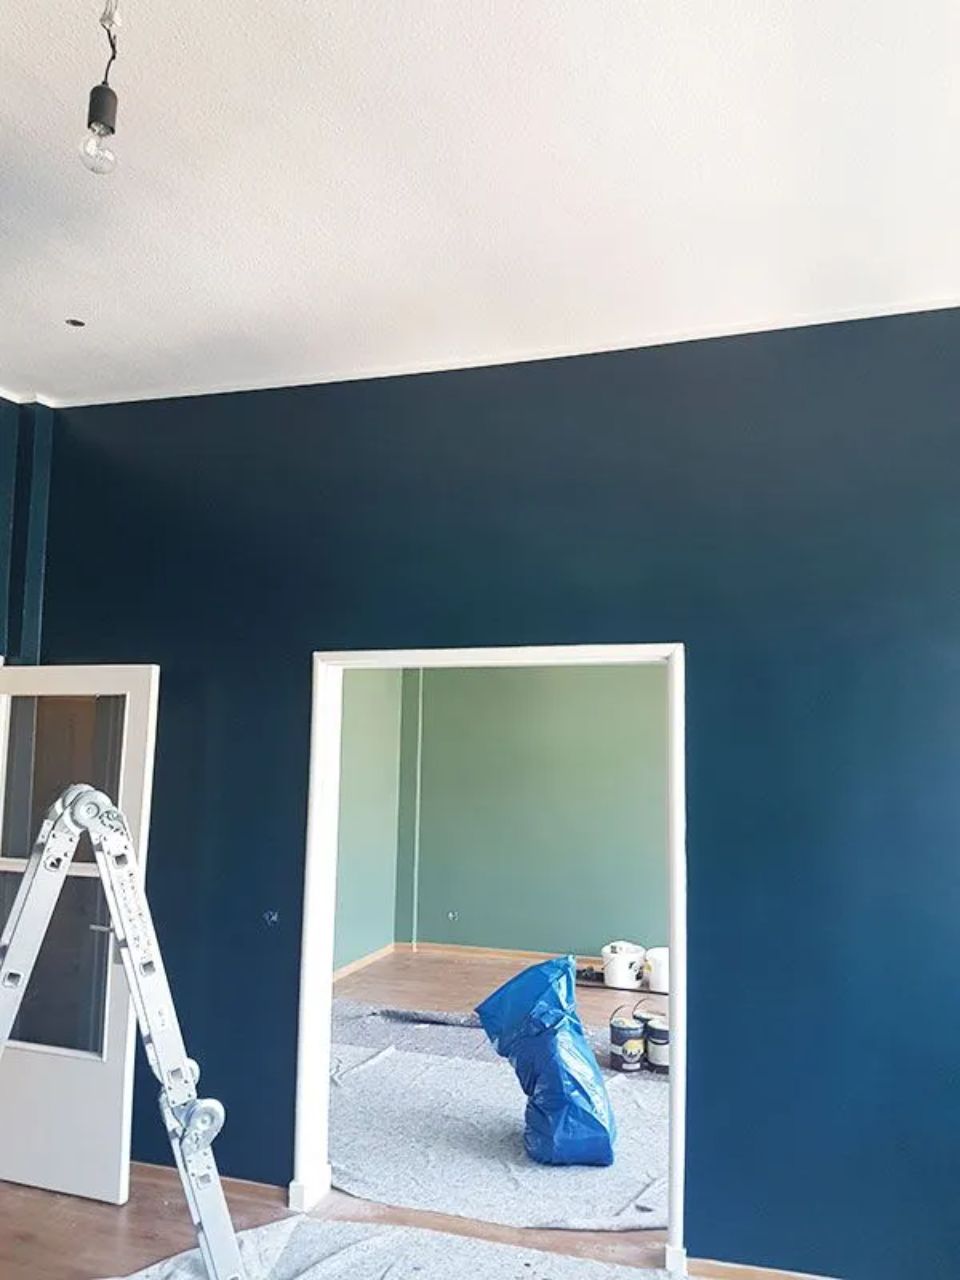 Anstrich mit dunkelgrüner Farbe im Wohnzimmer und hellgrüner Farbe im Esszimmer, ausgeführt durch ARAGON Projektentwicklung & Bauwerksanierung GmbH